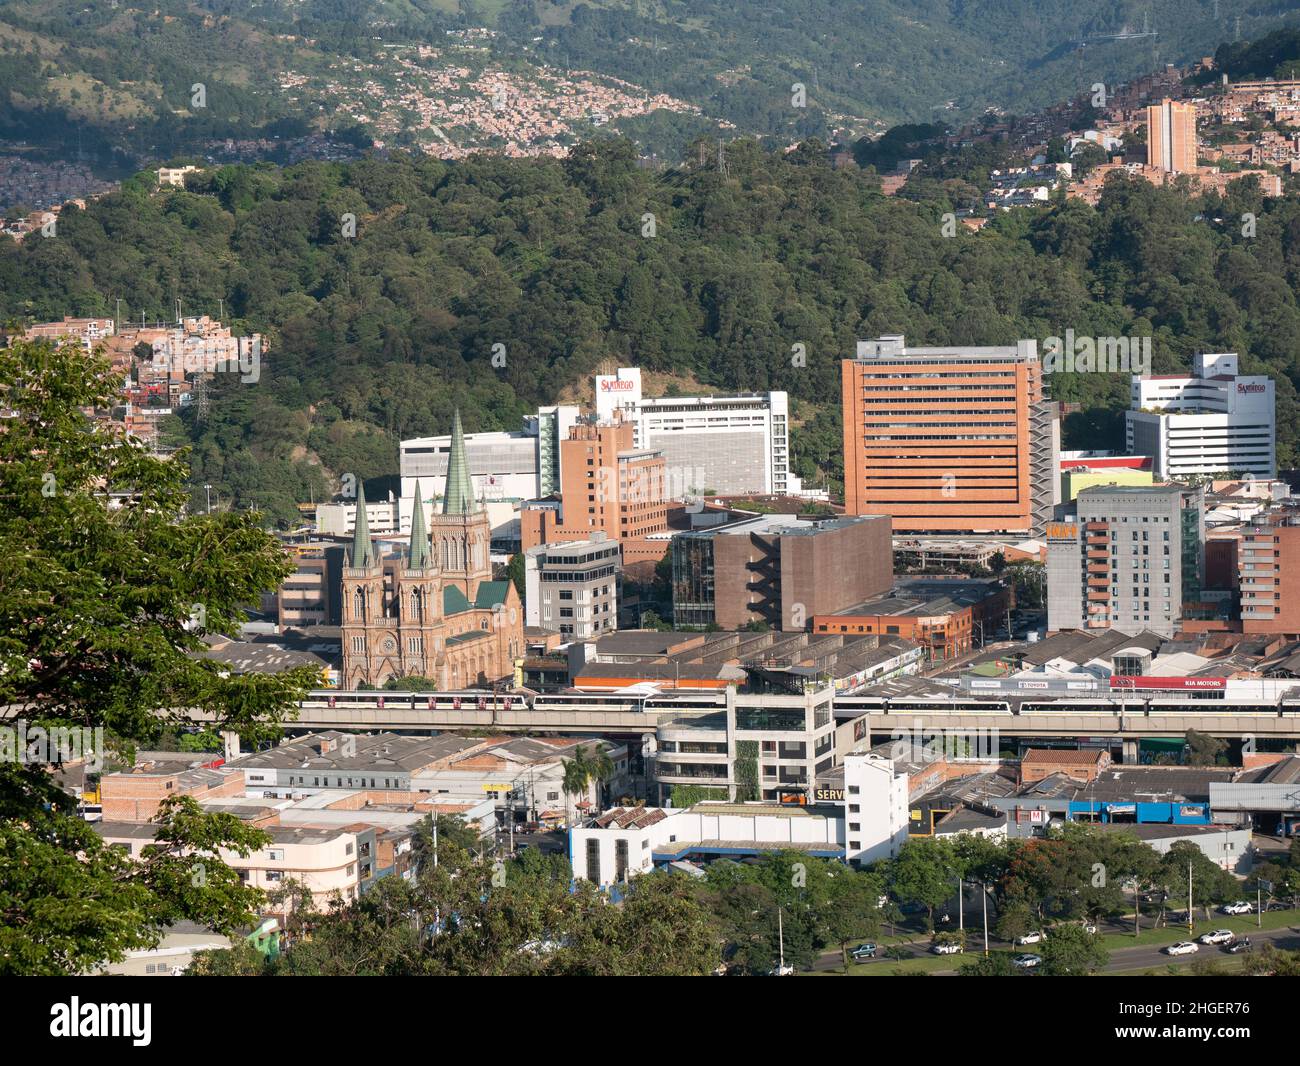 Medellin, Antioquia, Colombie - décembre 7 2021 : vue sur la ville de Medellin entourée de montagnes vertes par une journée ensoleillée Banque D'Images